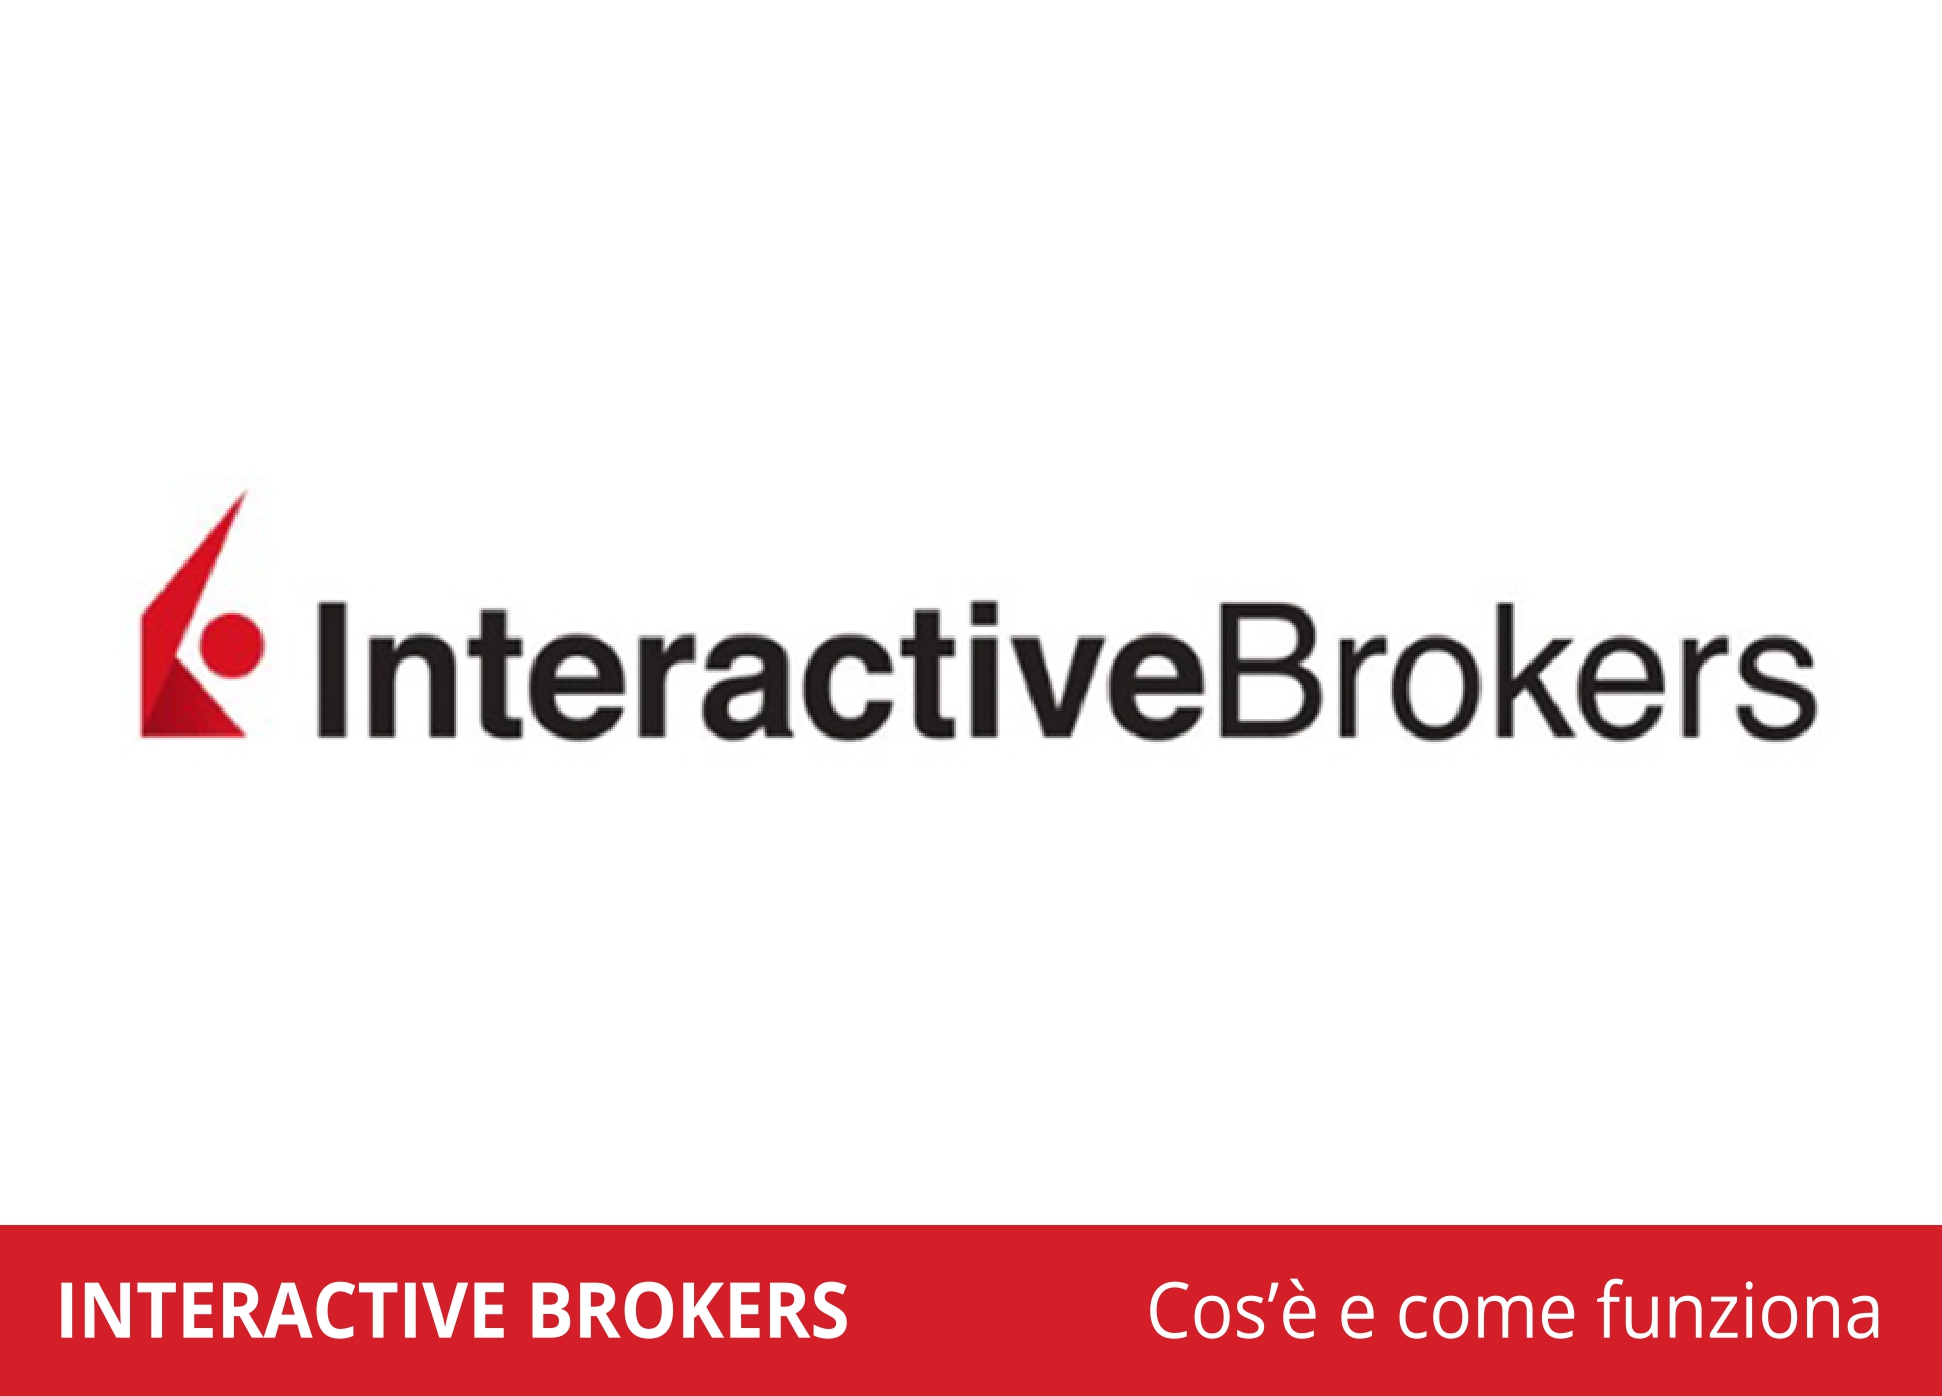 bitcoin negoziazione in interactive brokers)